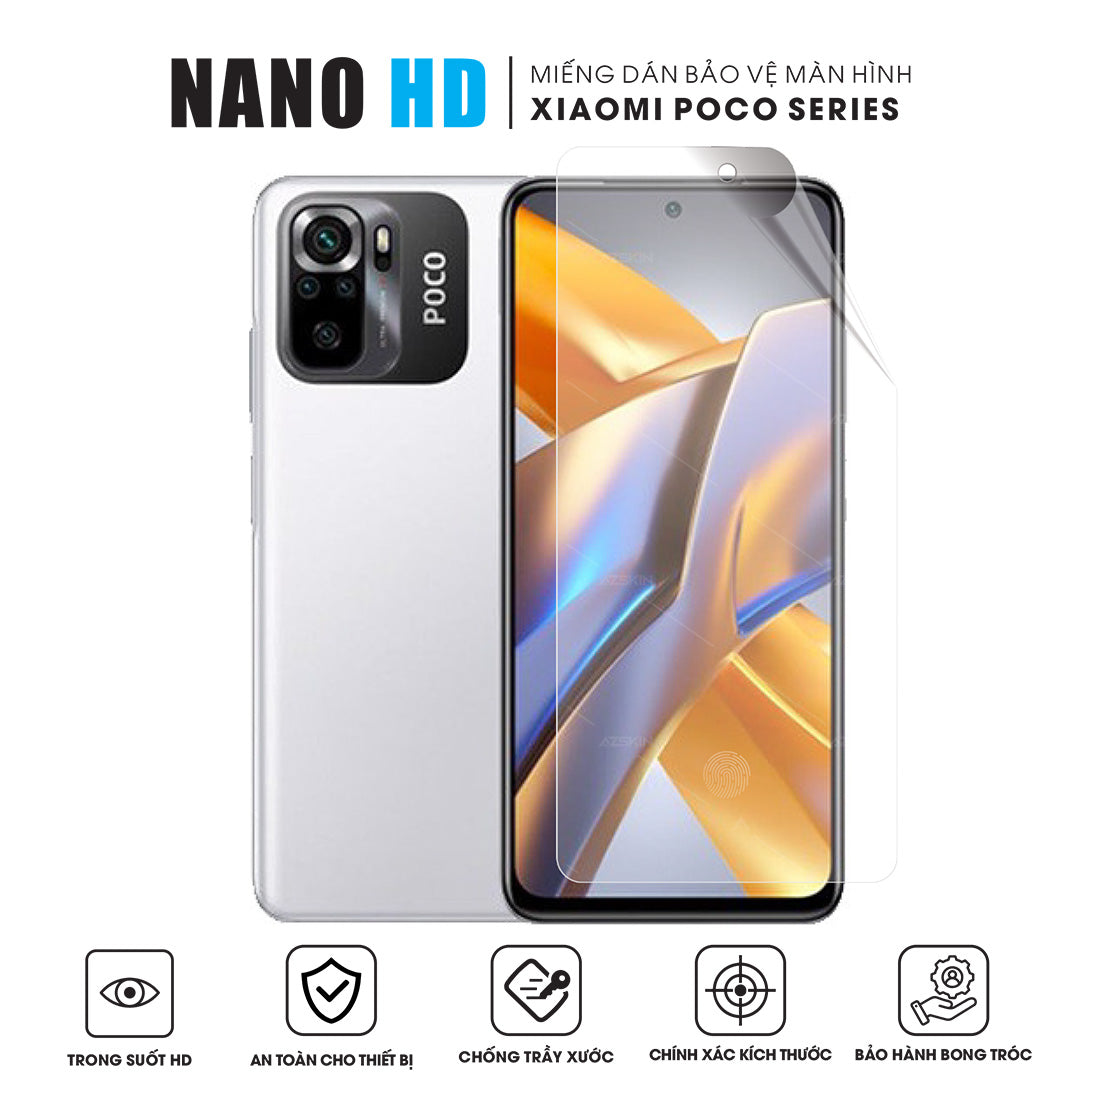 Miếng Dán Màn Hình Nano HD Xiaomi POCO Series